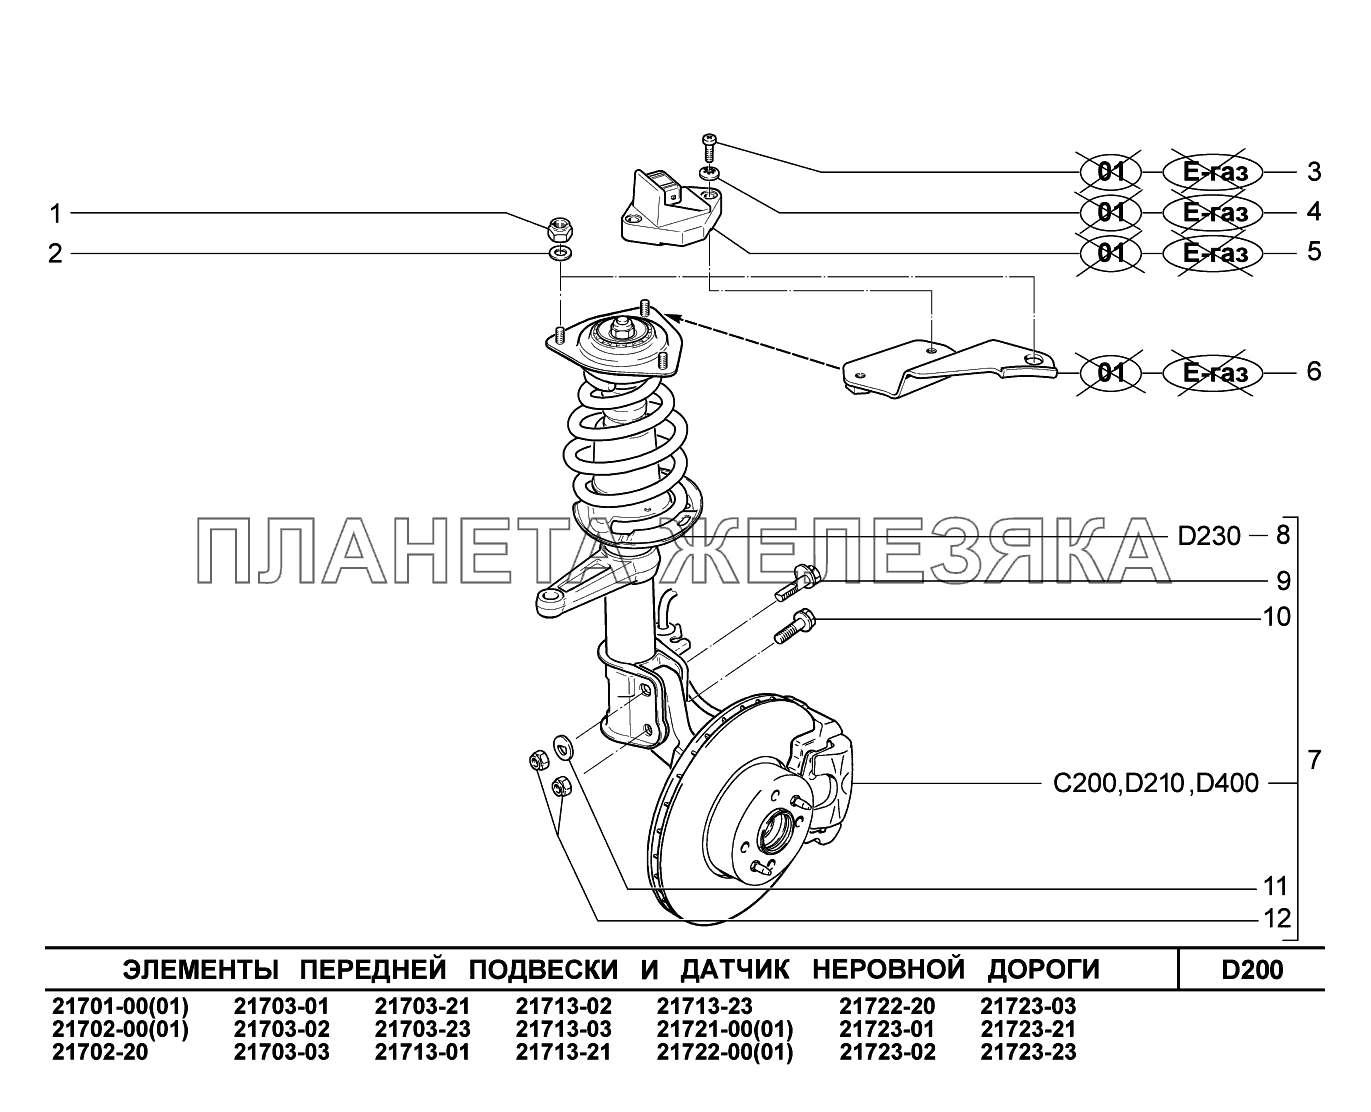 D200. Элементы передней подвески и датчик неровной дороги ВАЗ-2170 